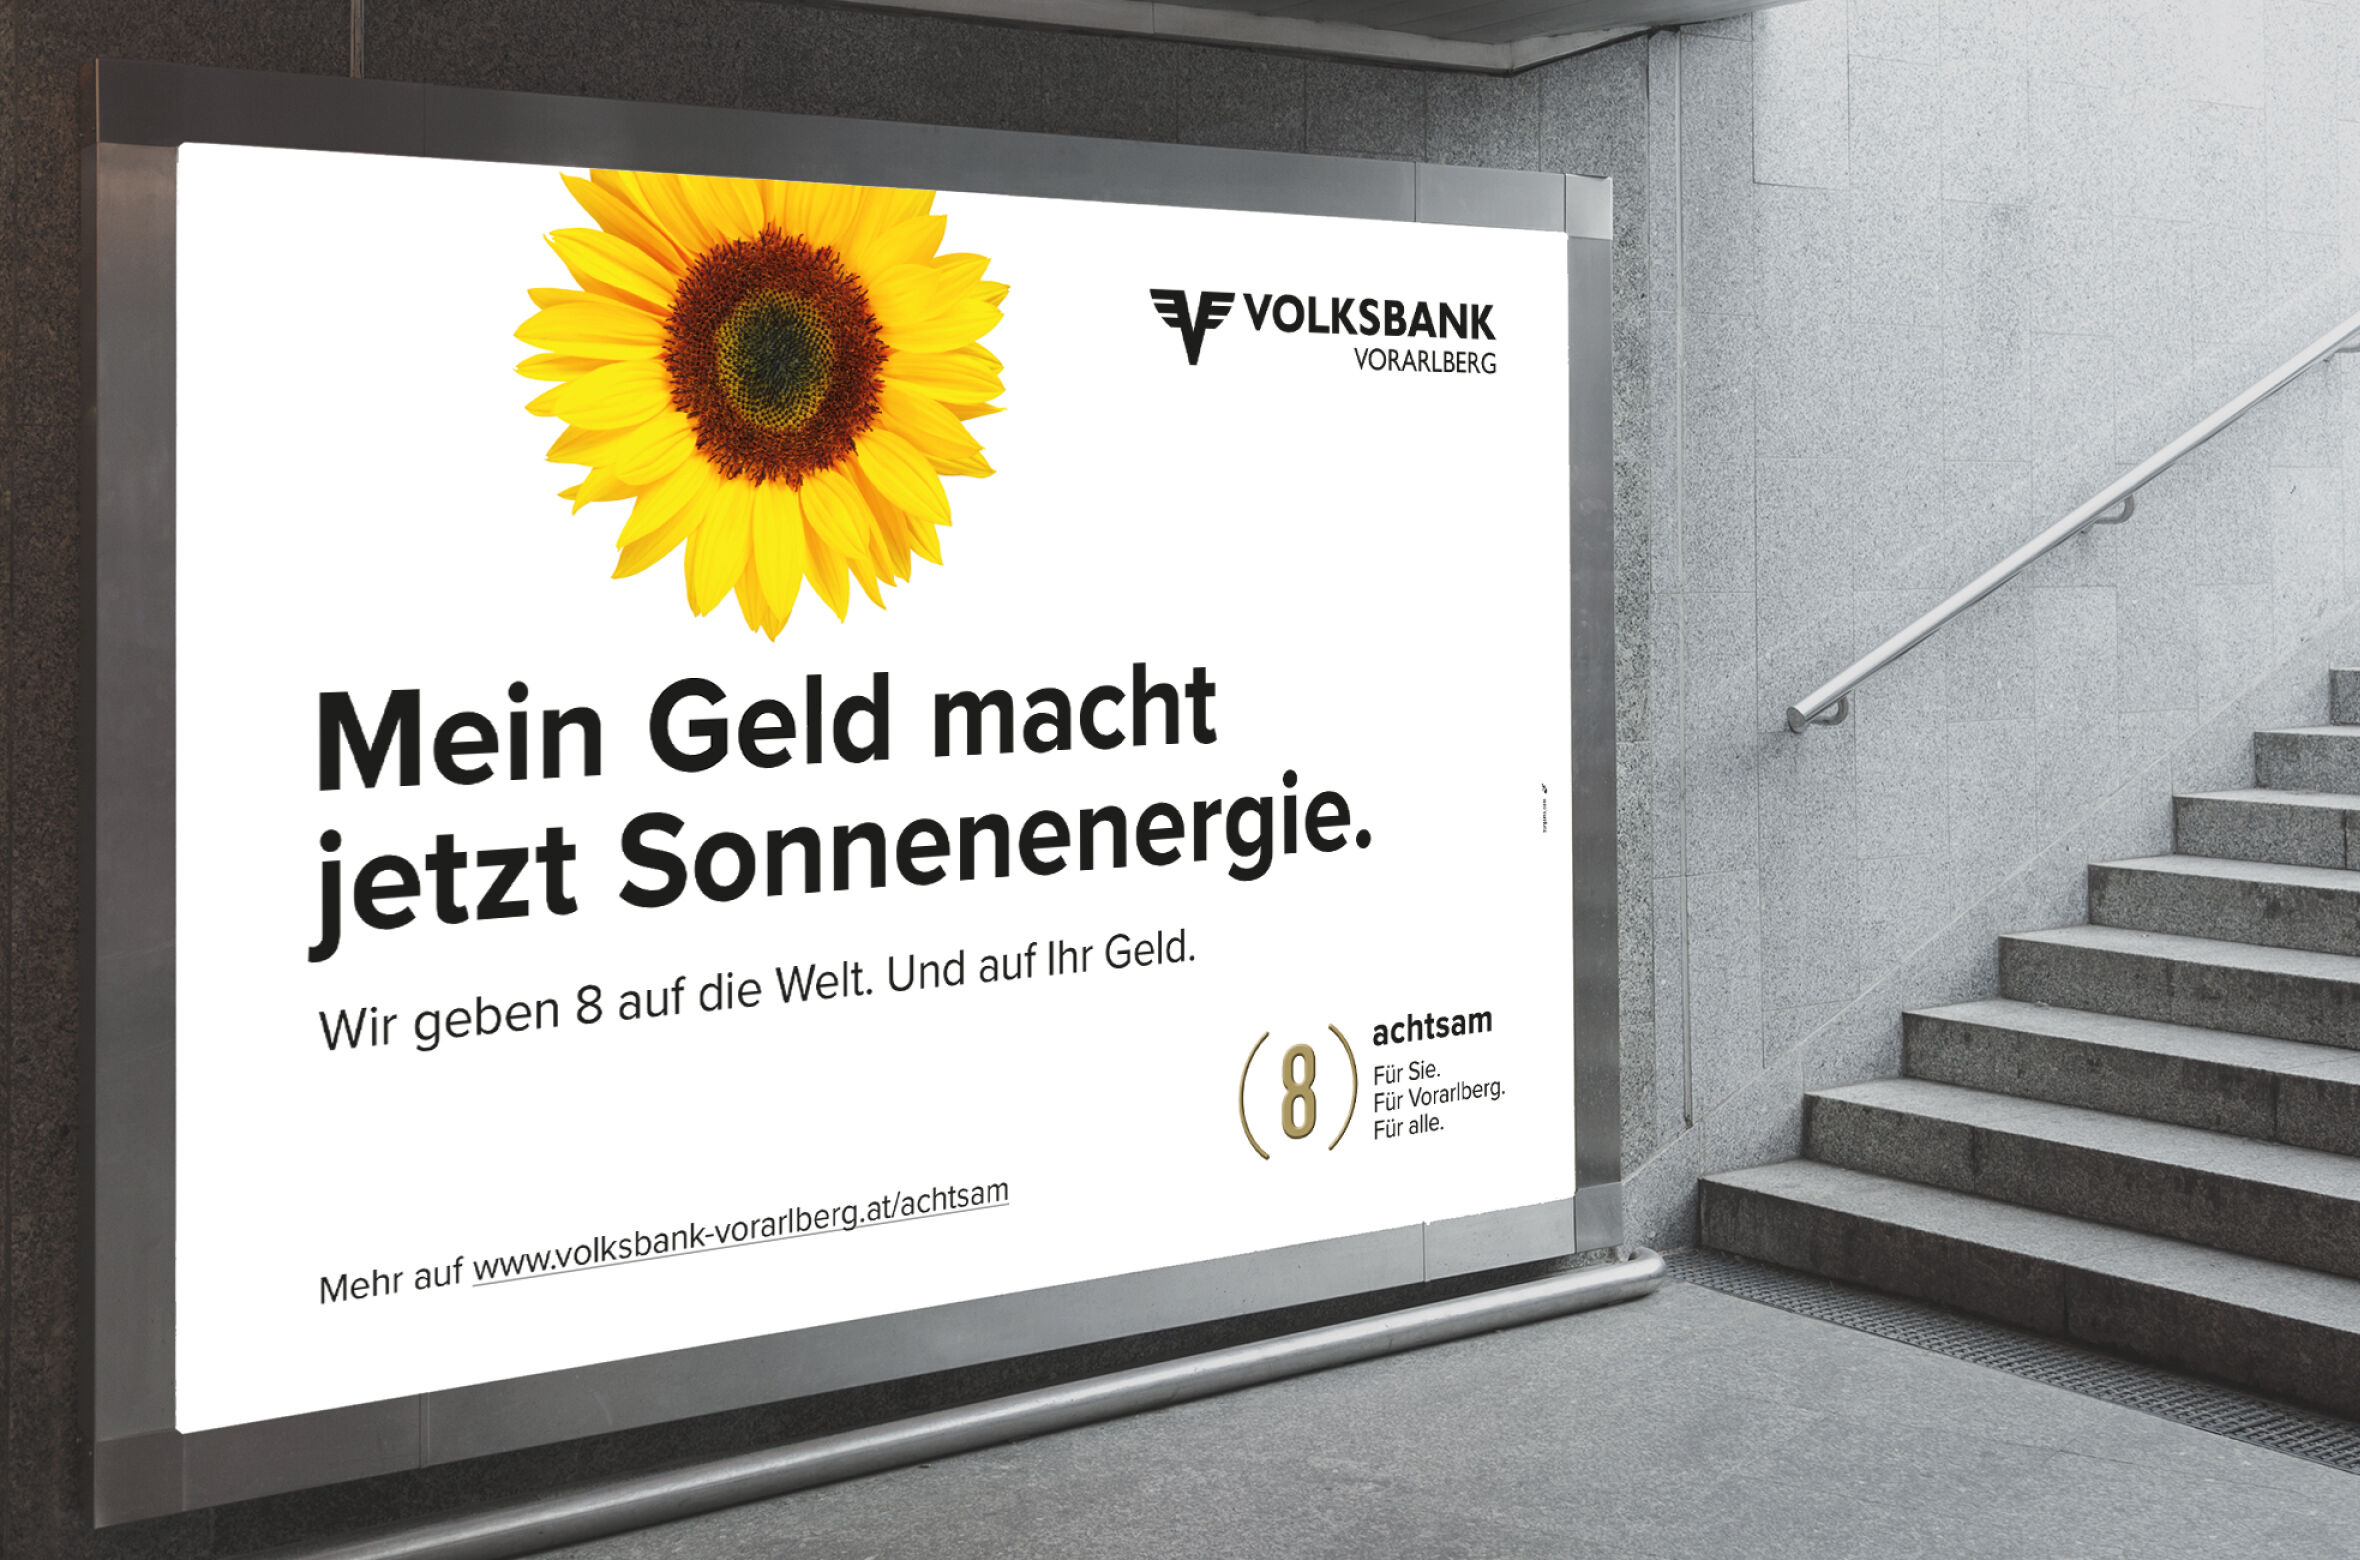 Volksbank_Vorarlberg_Achtsamkeit_Sonnenenergie_©zurgams.jpg